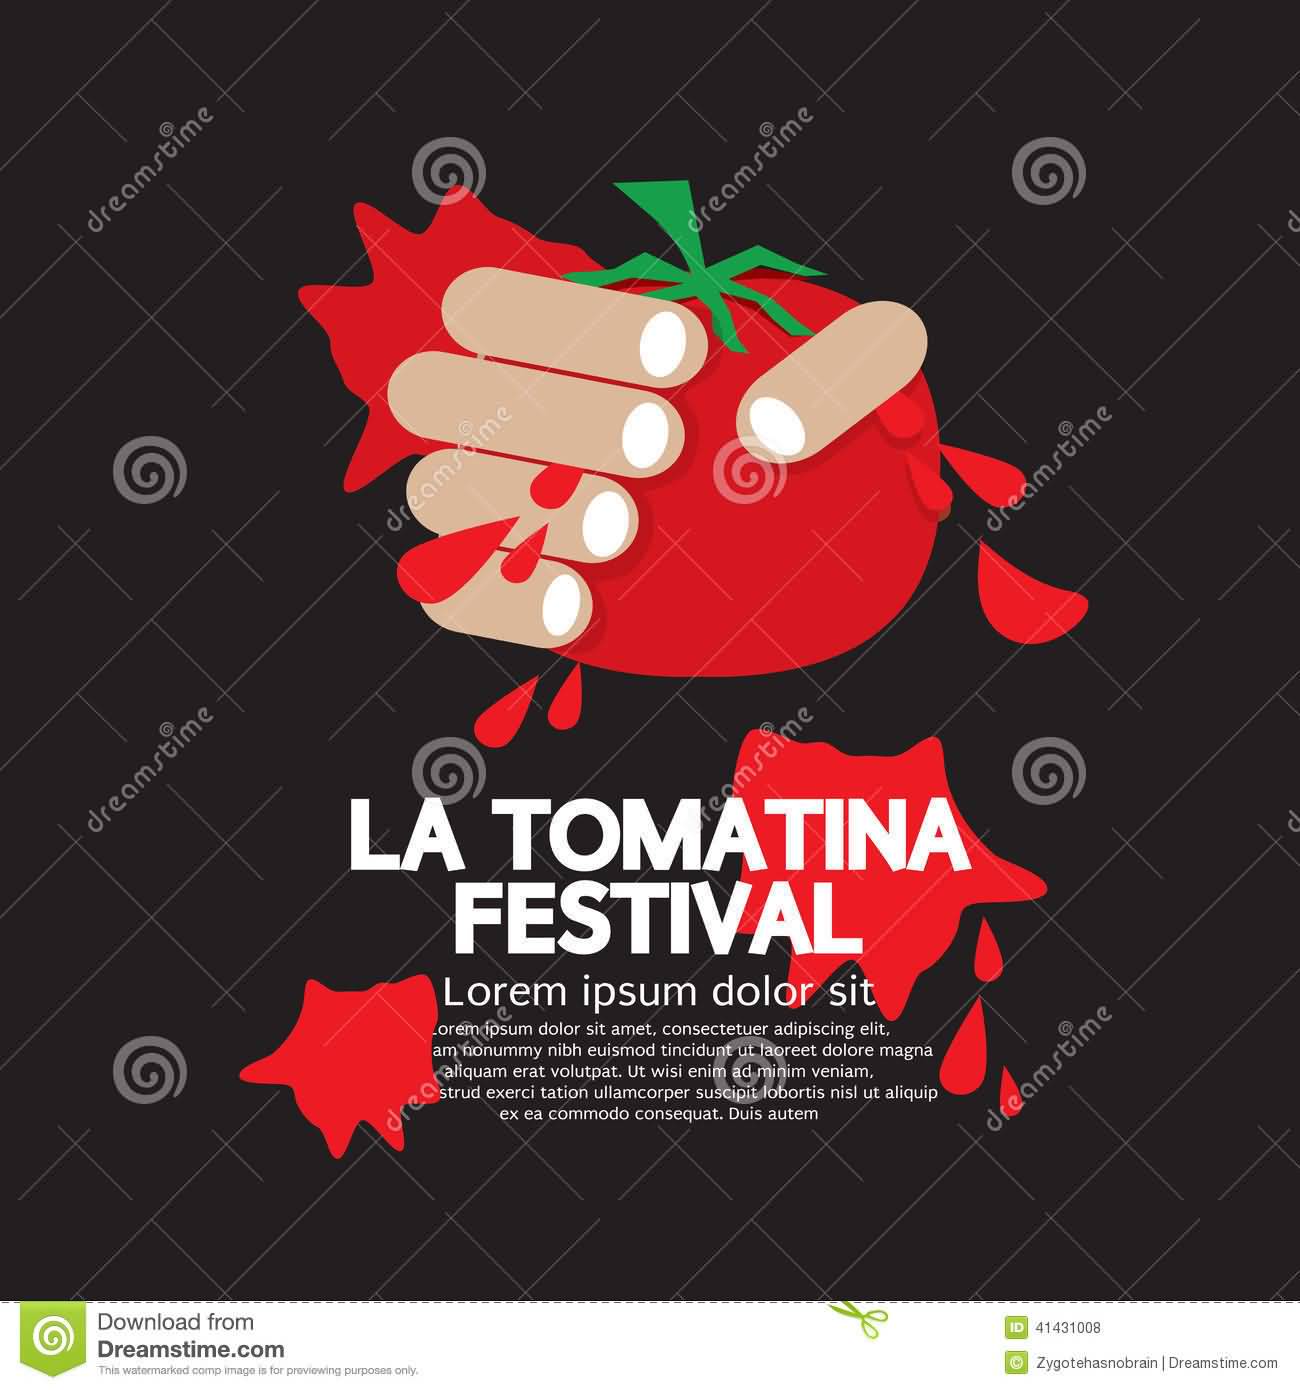 La Tomatina Festival Wishes Picture